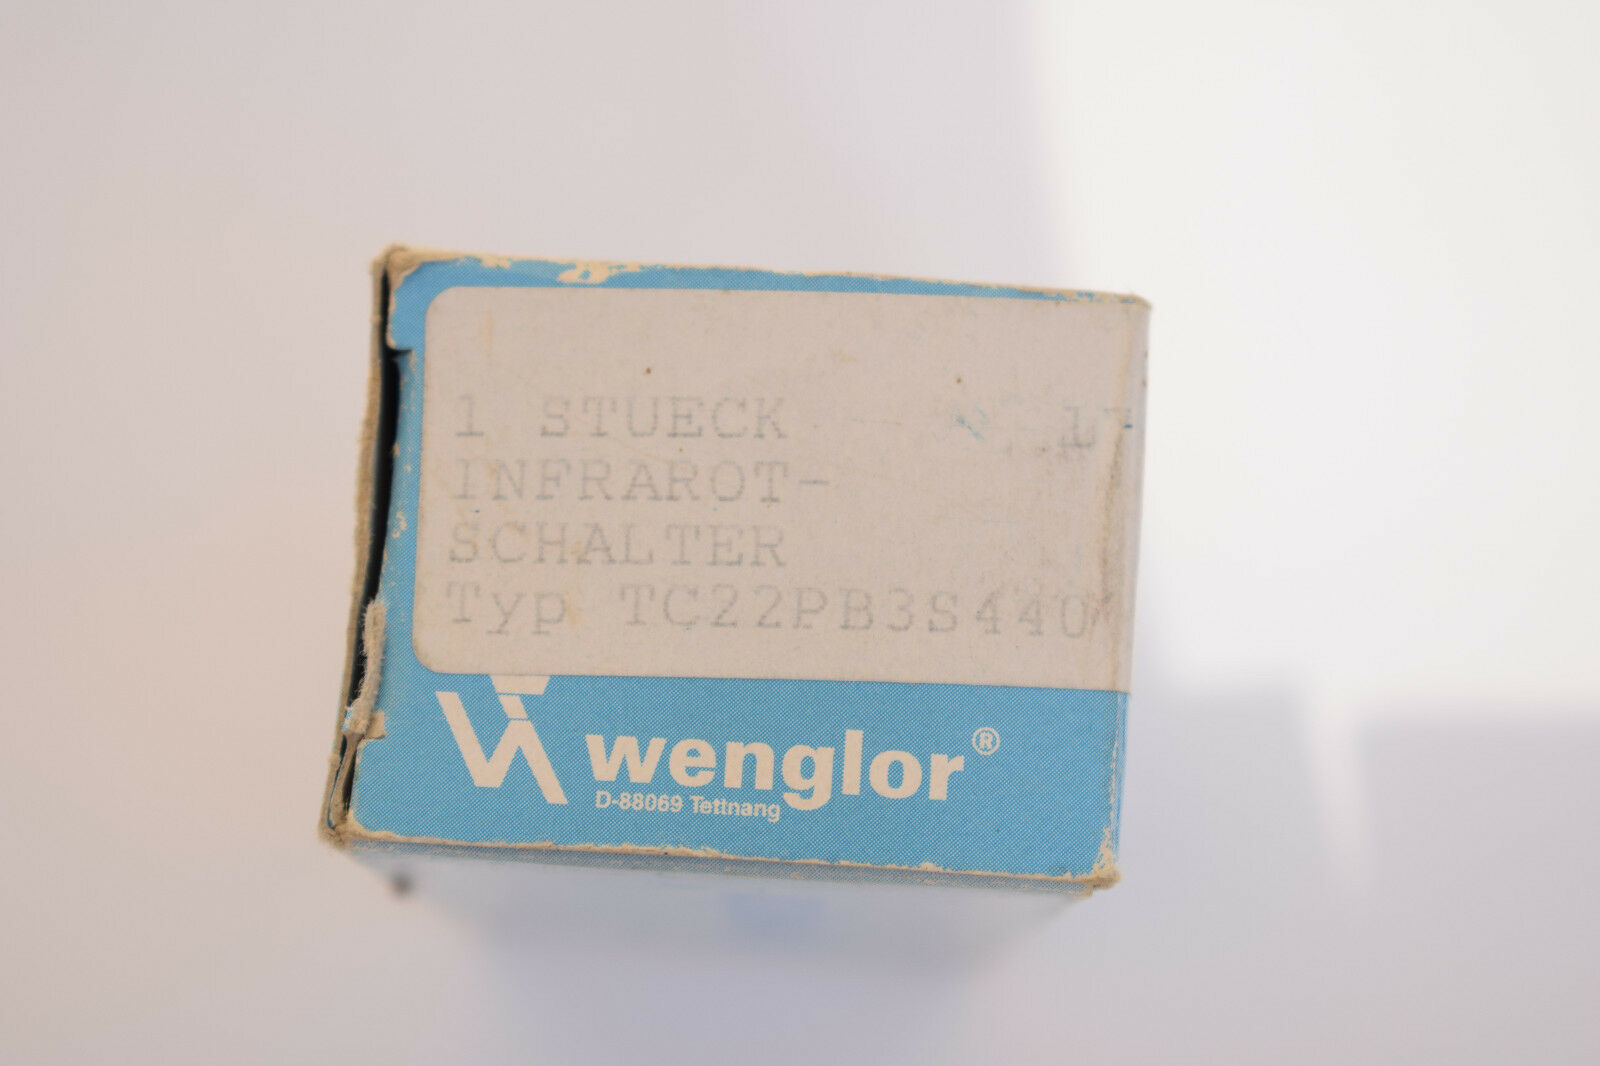 Wenglor Infrarot-Schalter TC22PB3S440